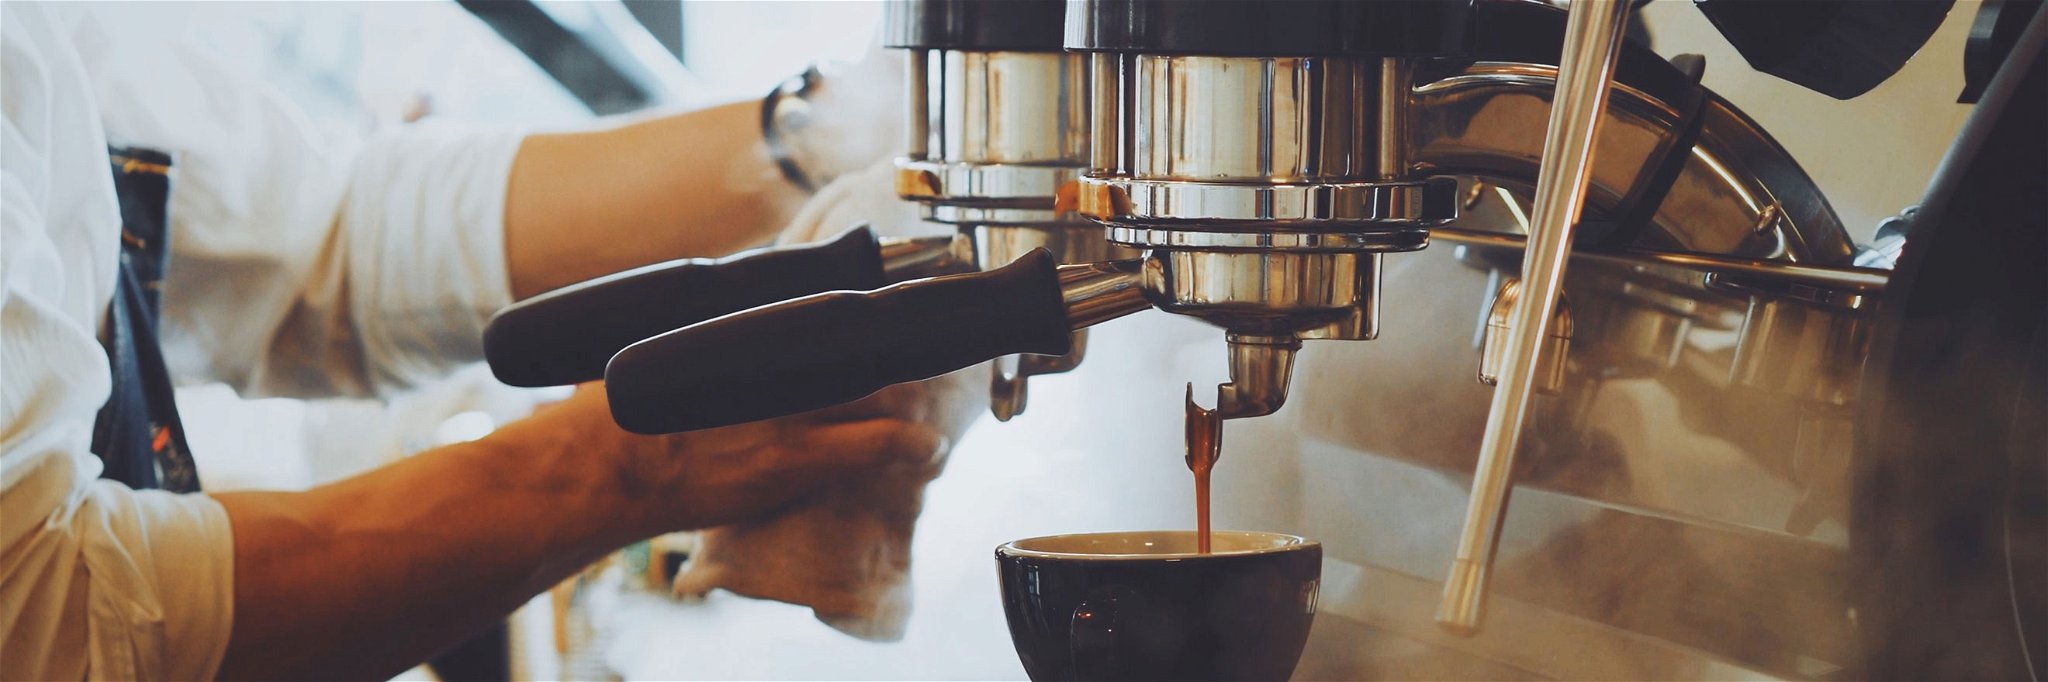 Zum perfekten Kaffee gehören nicht nur die richtigen Bohnen. Auch das Equipment spielt eine wichtige Rolle.